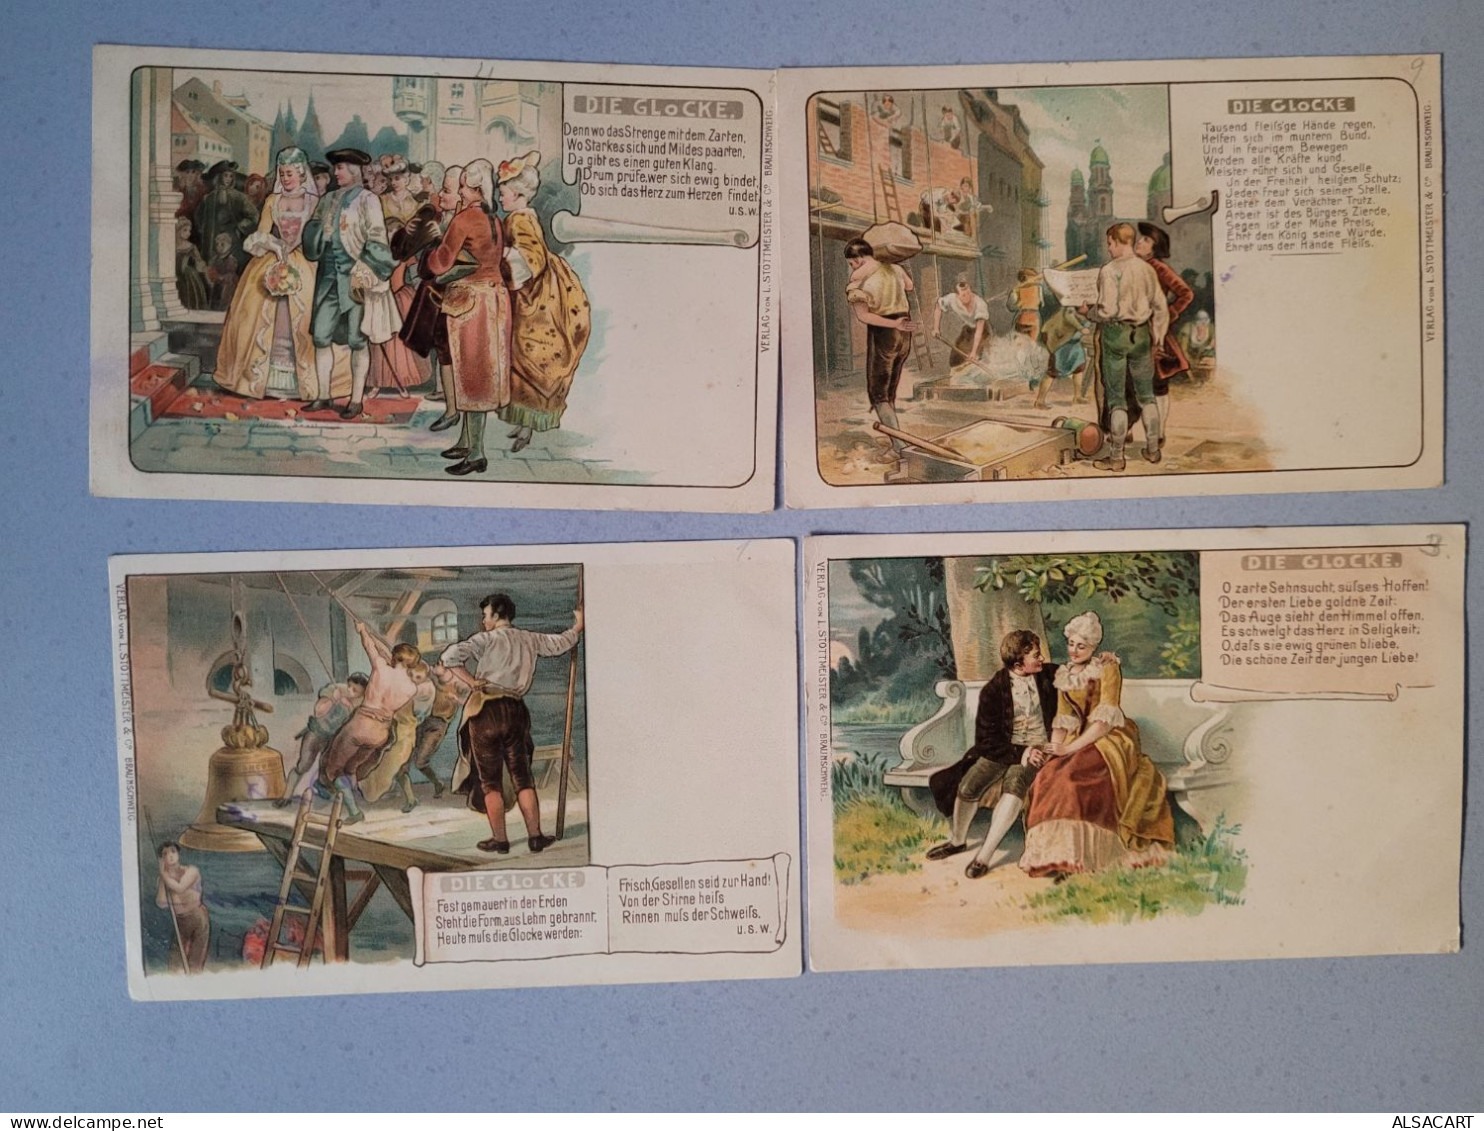 Lot De 10 Cartes 1900 Illustrateur , Die Glocke  , Hongrie? - Non Classés